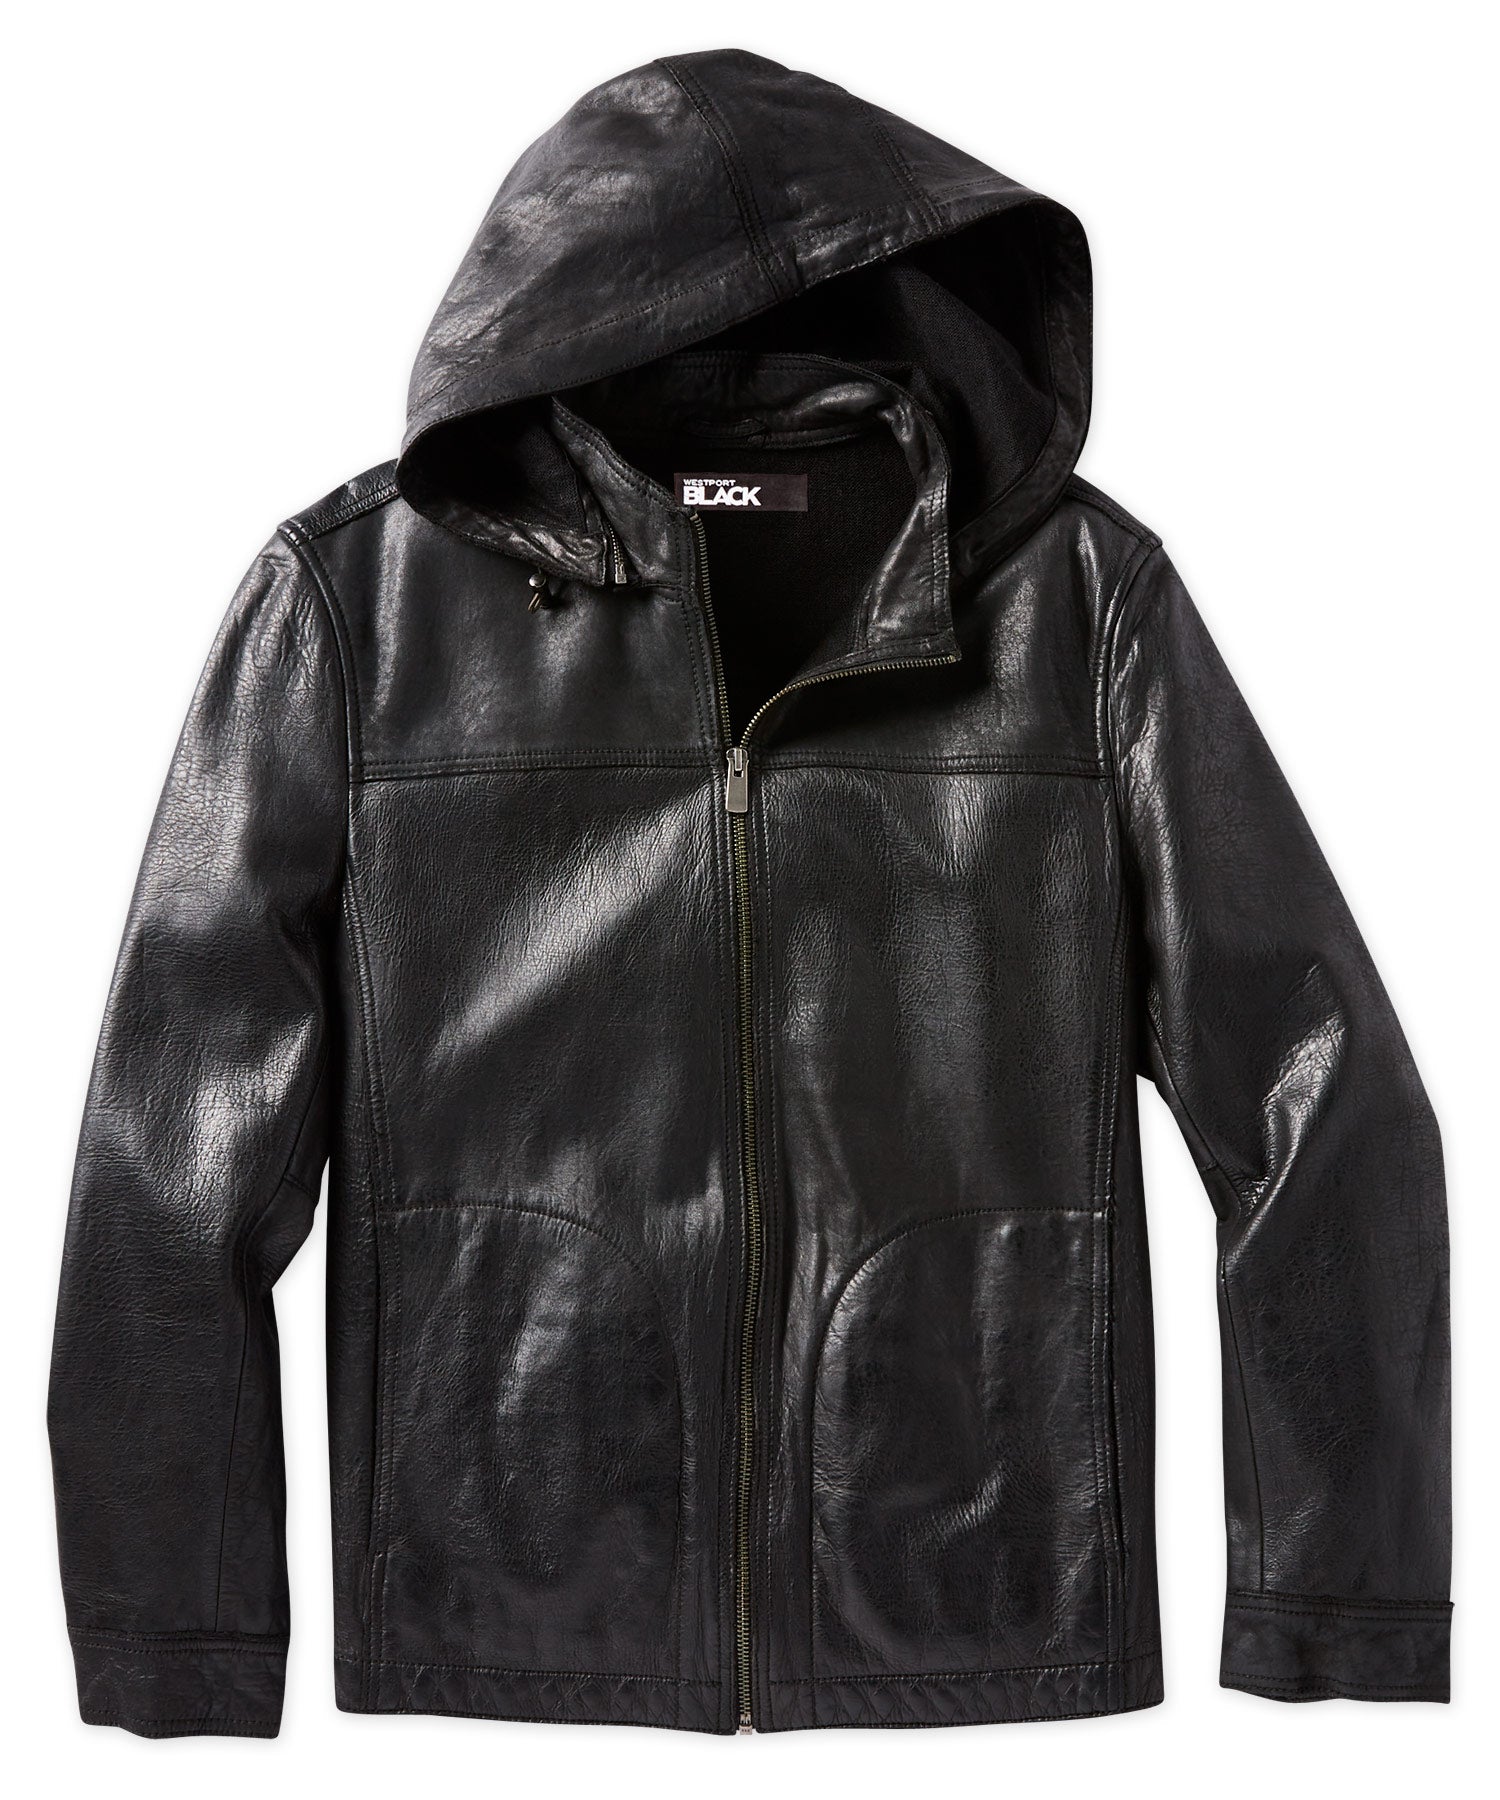 Westport Black Hooded Leather Jacket